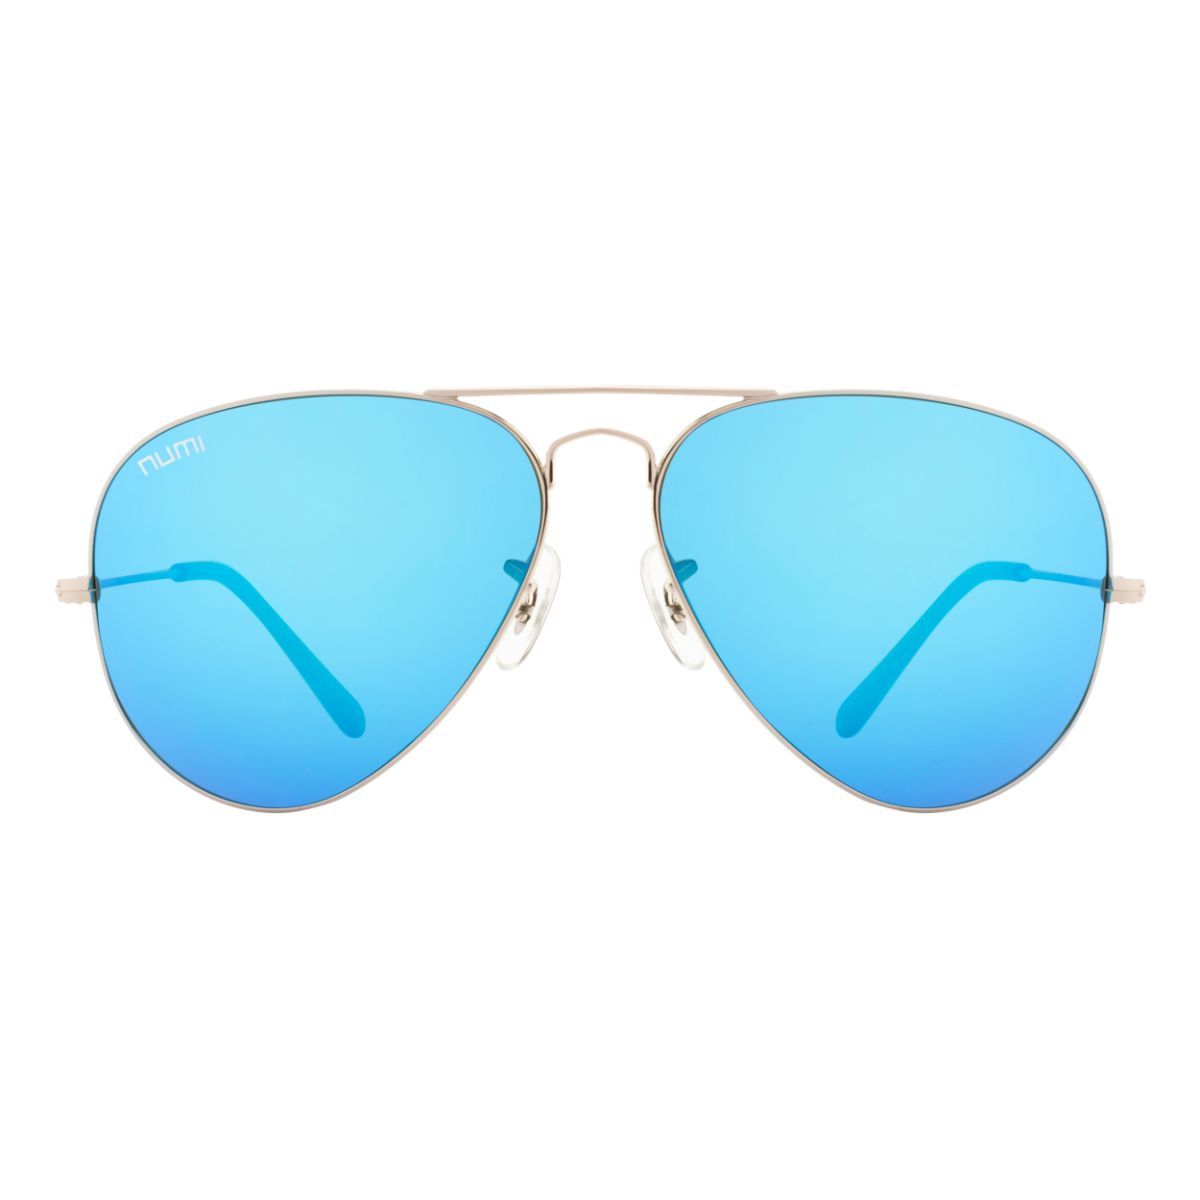 UV Protection, Mirrored Aviator Sunglasses (57) (For Men & Women, Sky Blue)